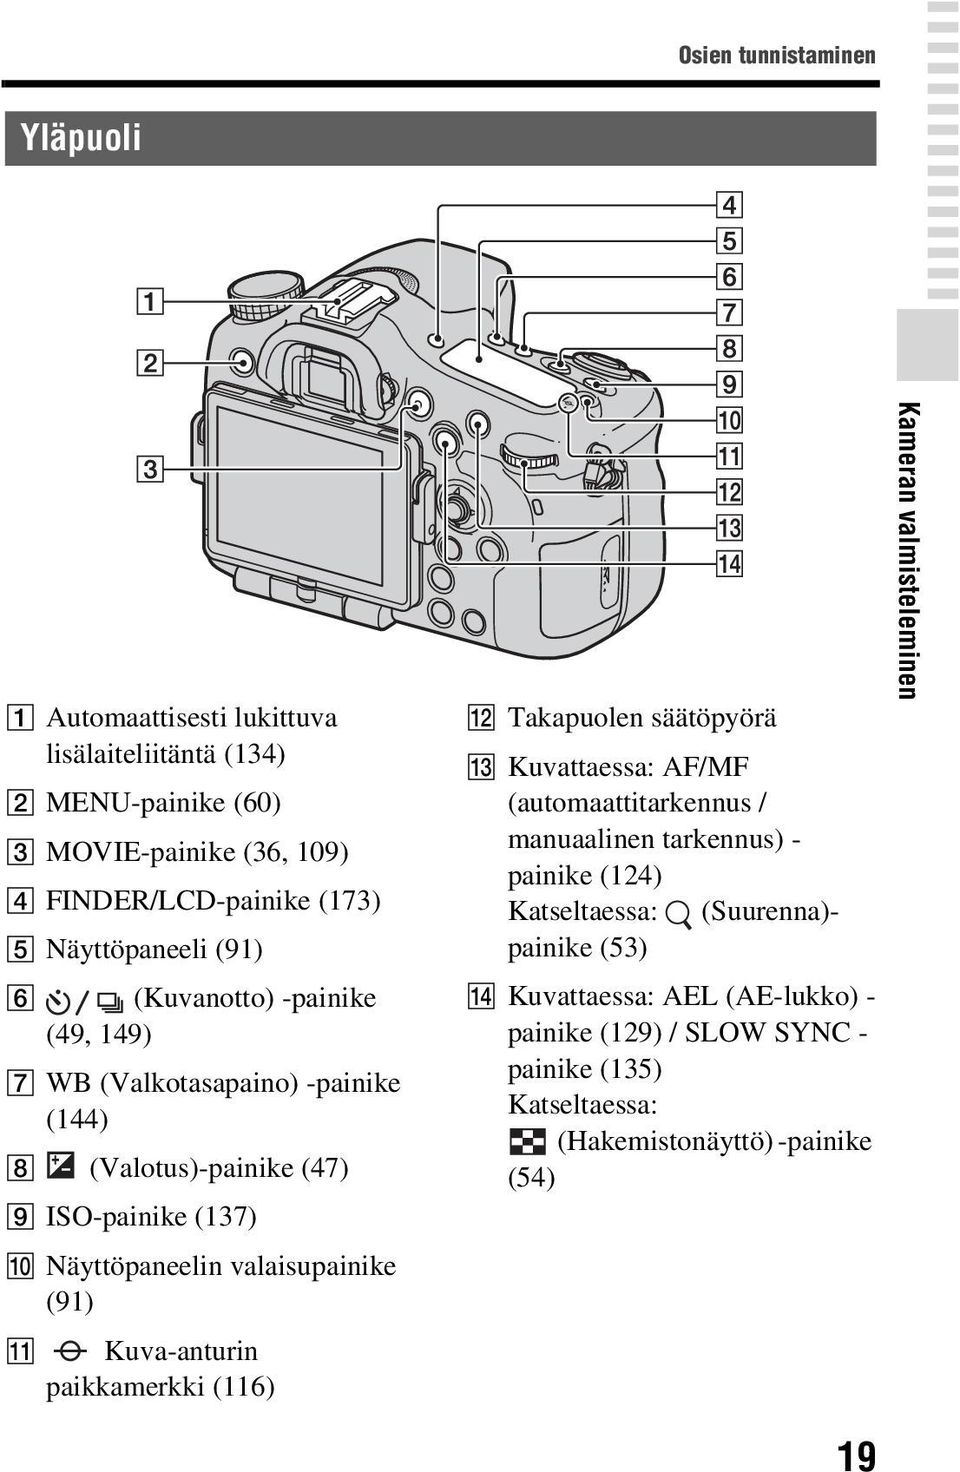 valaisupainike (91) K Kuva-anturin paikkamerkki (116) L Takapuolen säätöpyörä M Kuvattaessa: AF/MF (automaattitarkennus / manuaalinen tarkennus) - painike (124)